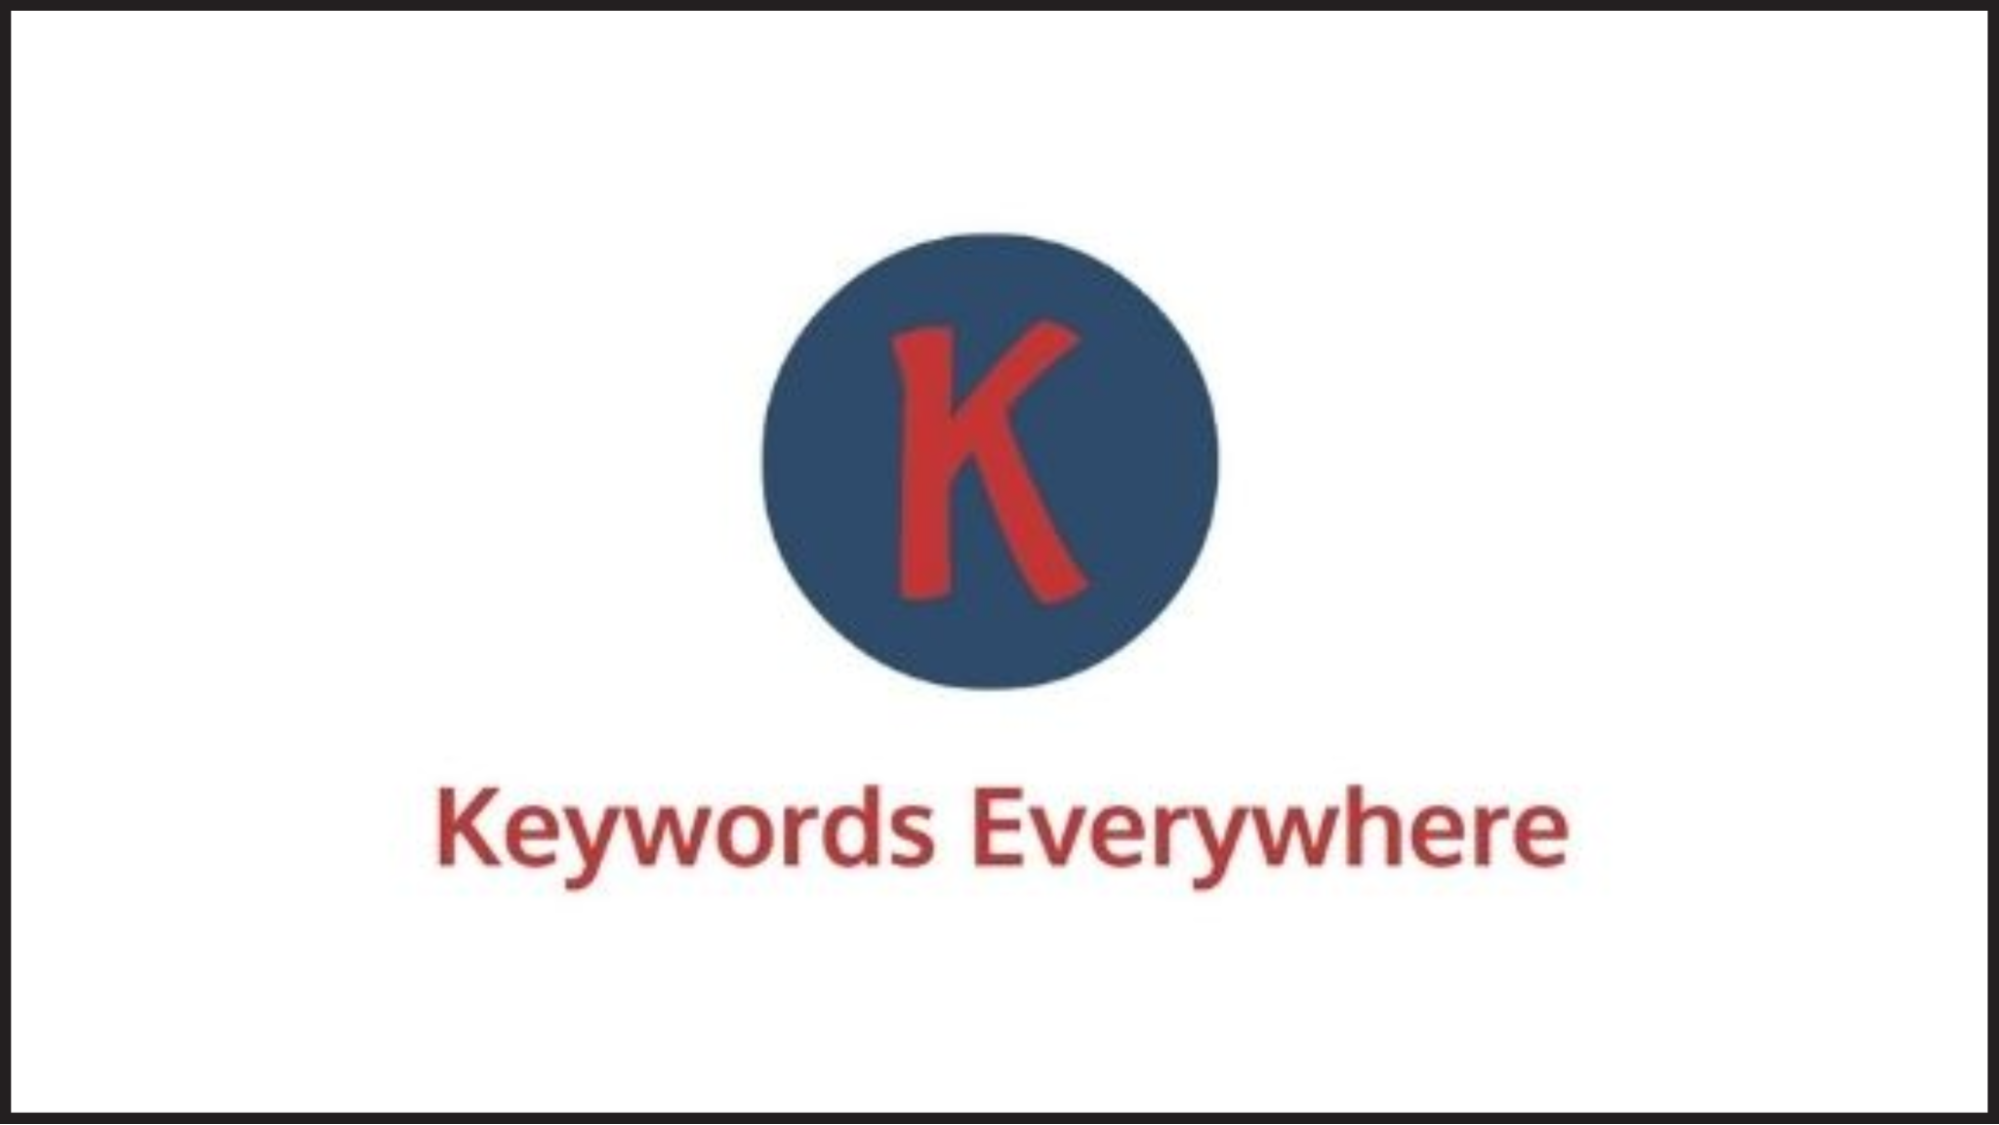  Keywords Everywhere